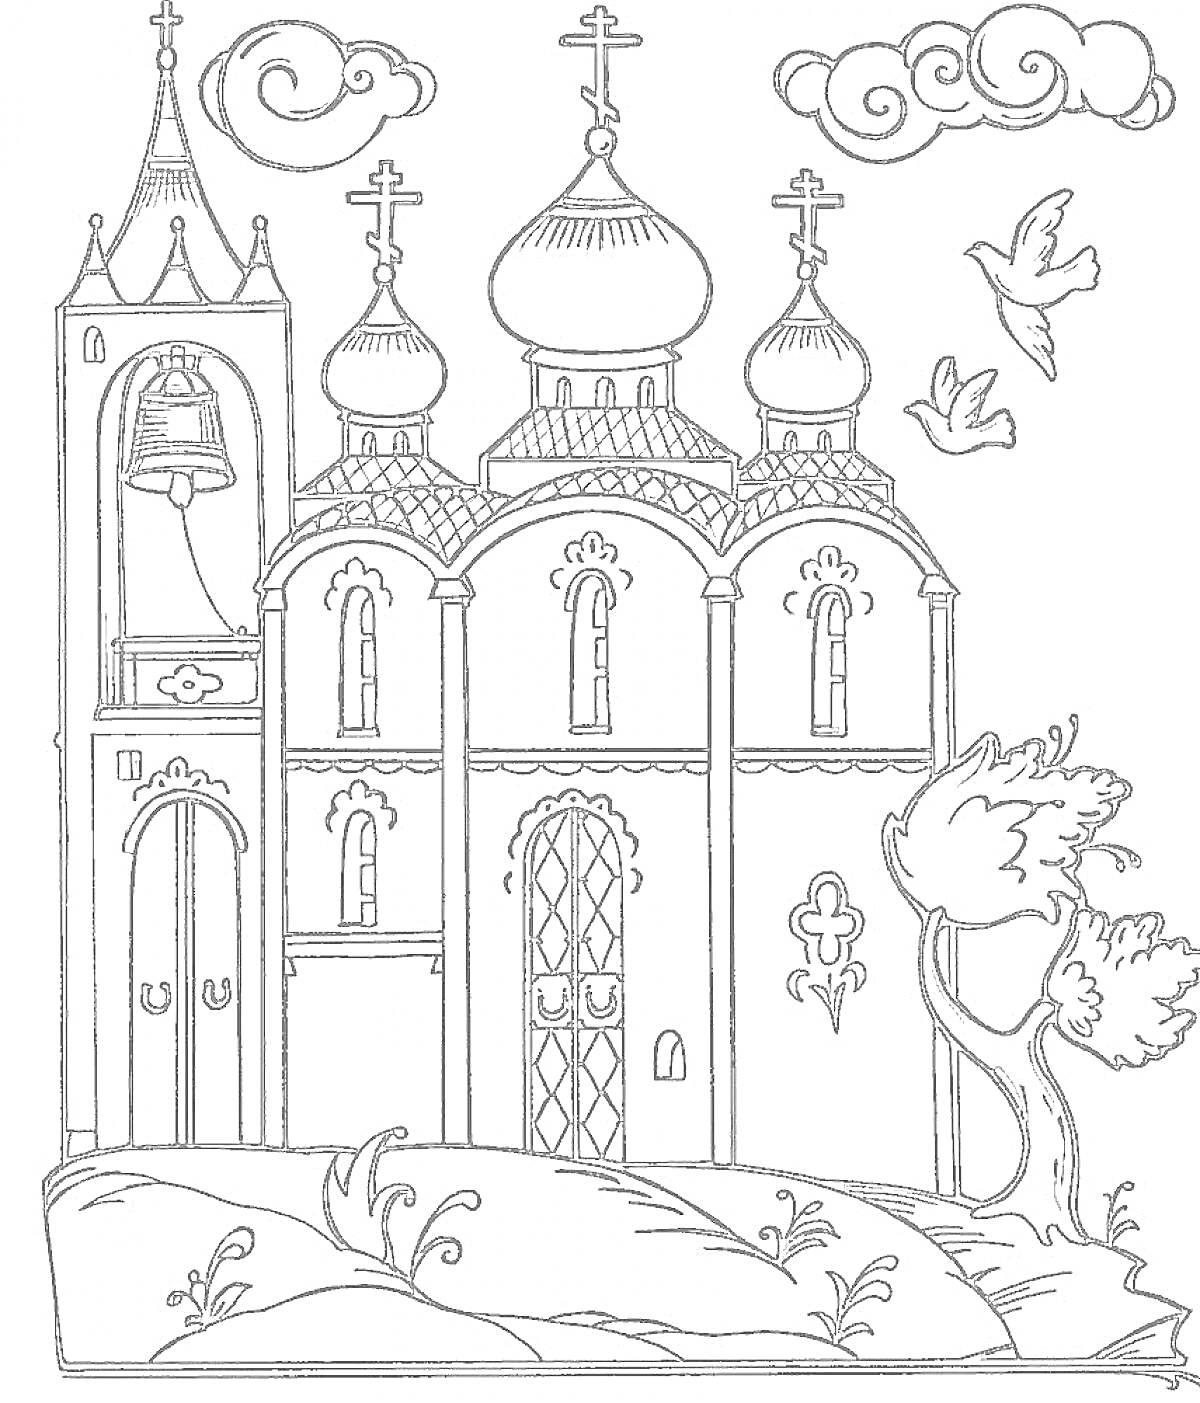 Раскраска Церковь с колокольней, крестами, куполами, дверьми и окнами, облака, птицы, дерево, кусты и трава